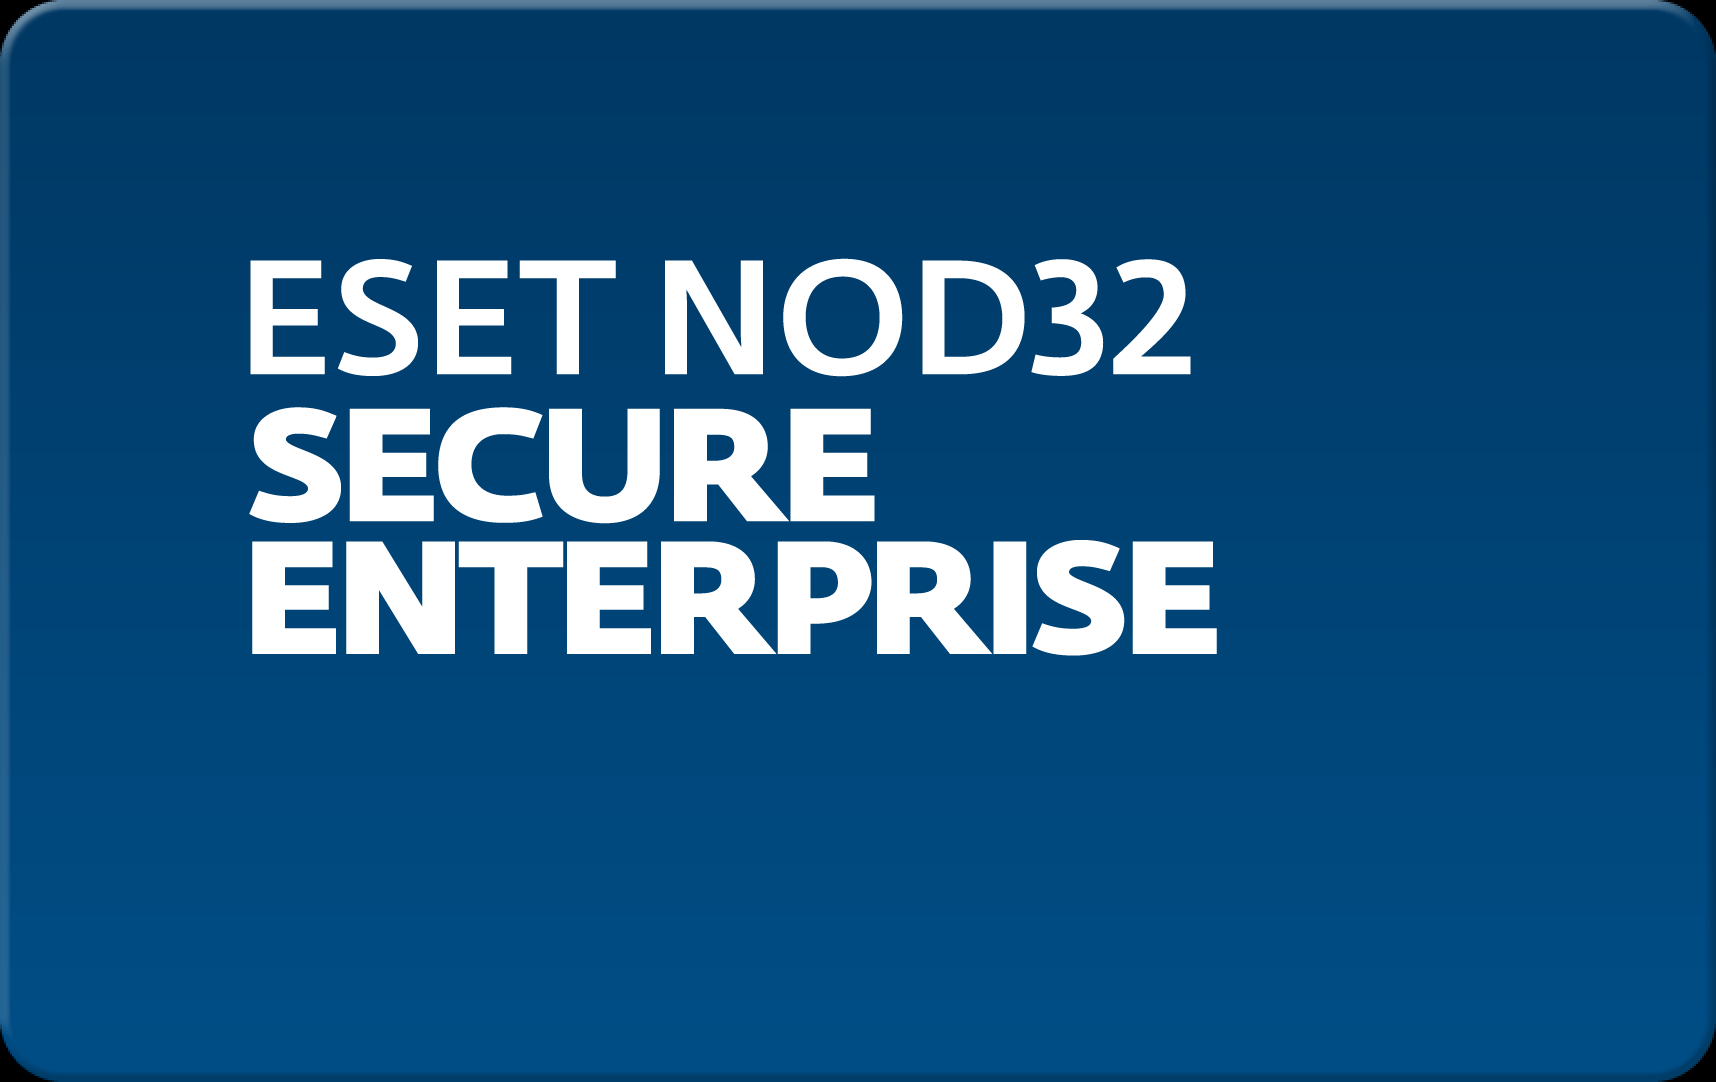        Eset NOD32 Secure Enterprise  150 